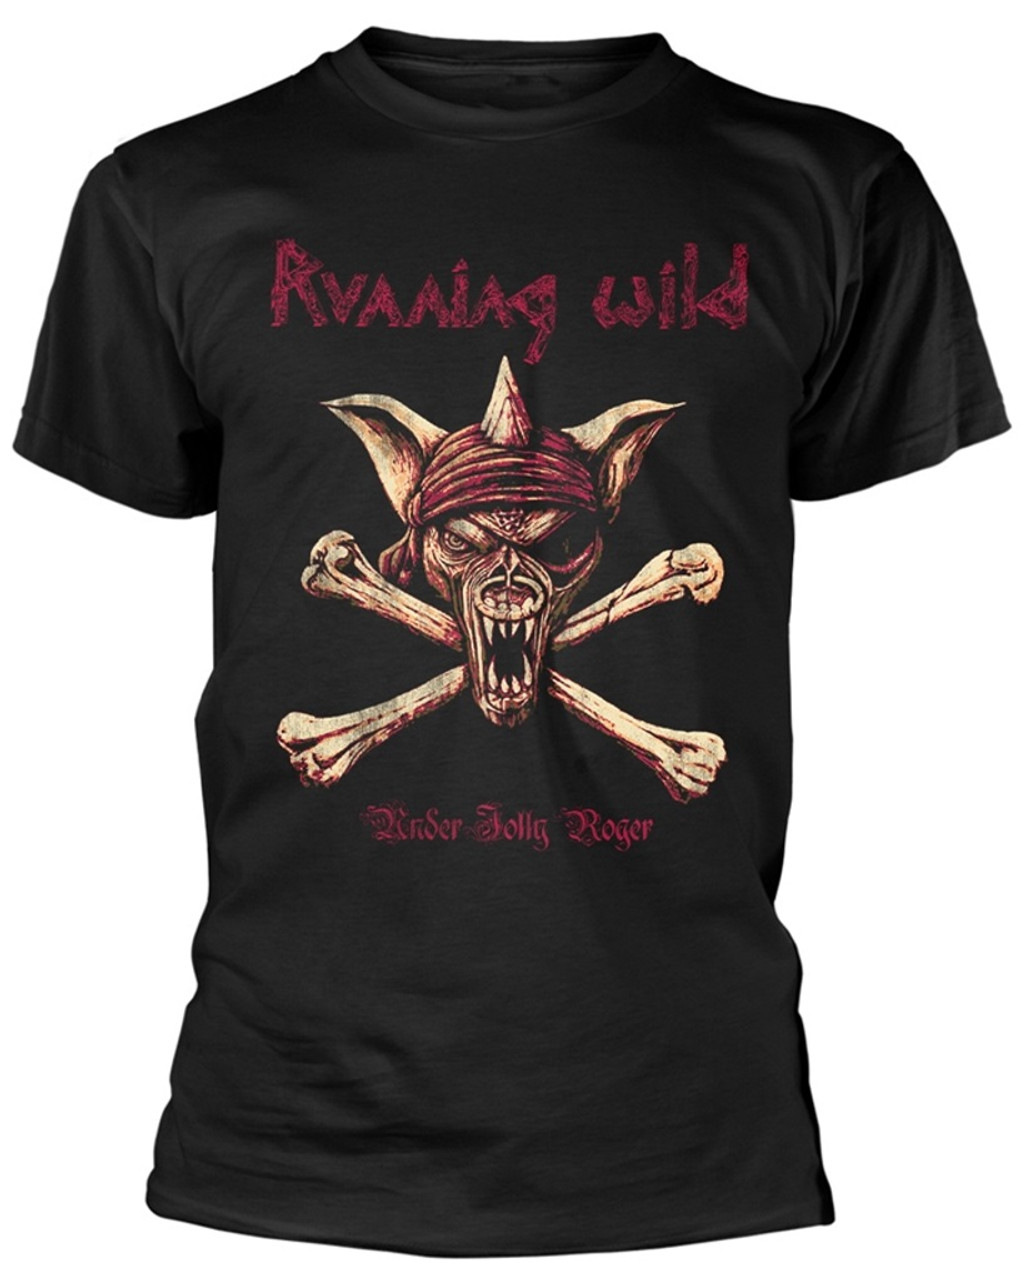 Running Wild 'Under Jolly Roger (Crossbones) (Black) T-Shirt